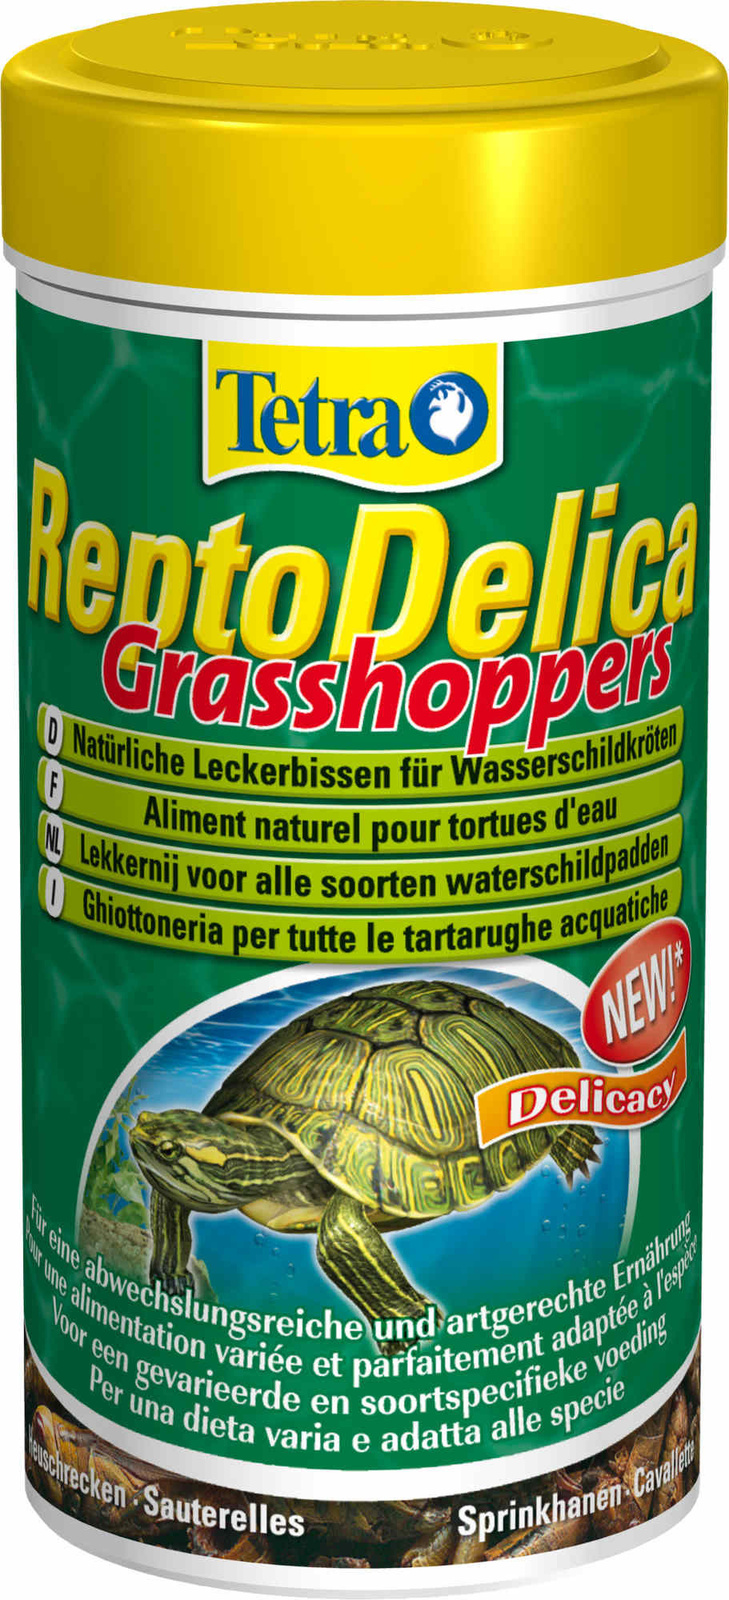 Tetra (корма) Tetra (корма) натуральное лакомство для водных черепах: кузнечики (28 г) tetra корма tetra корма корм для водных черепах гаммарус 10 г